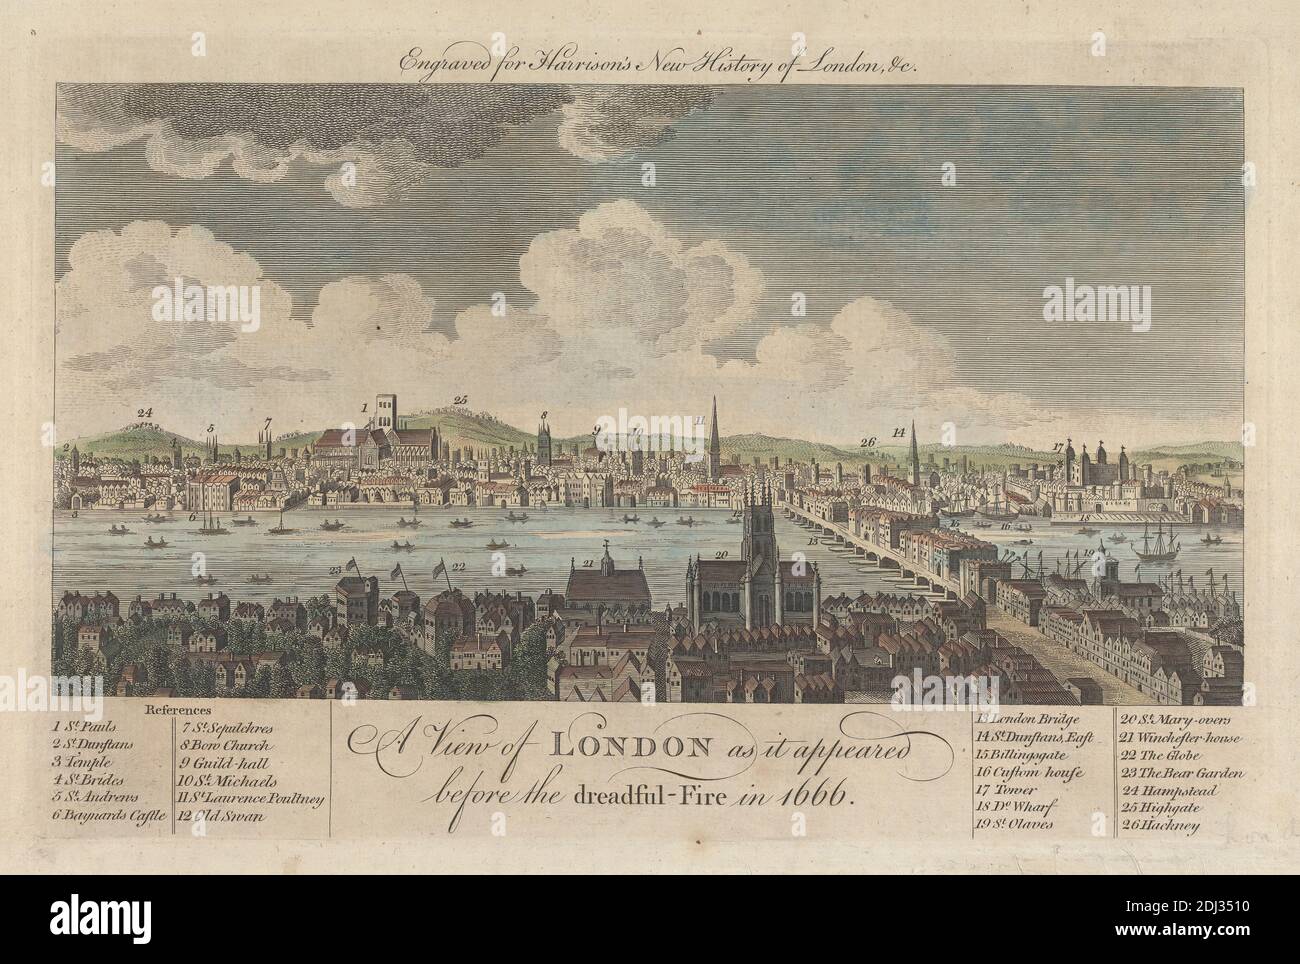 Una vista de Londres como apareció ante el terrible Fuego en 1666, artista desconocido, siglo XVII-XVIII, después de artista desconocido, sin fecha, grabado de color a mano Foto de stock